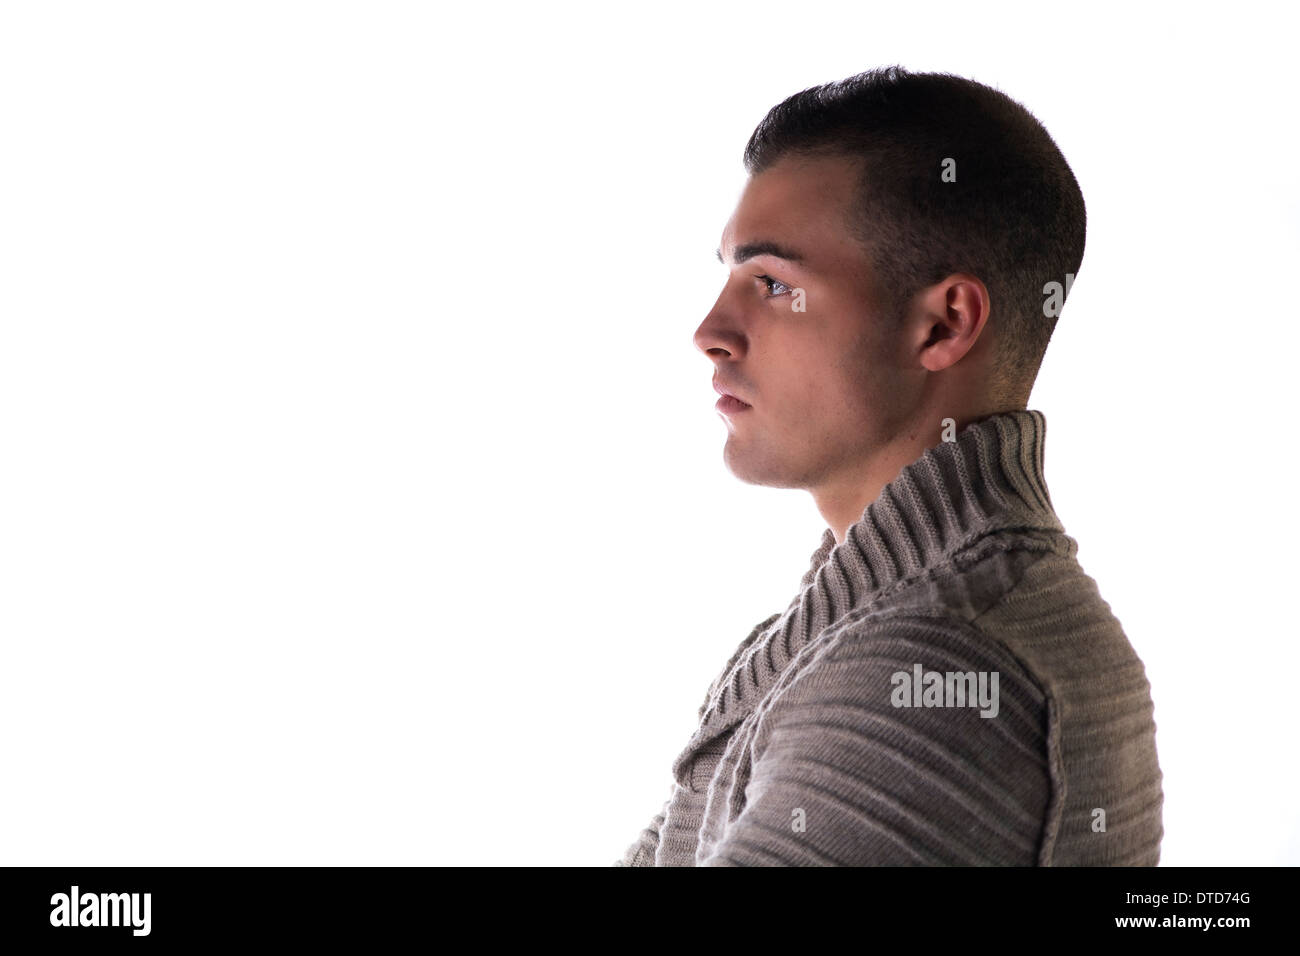 Profil de jeune homme attrayant avec jersey gris, cavalier ou un chandail, isolated on white Banque D'Images